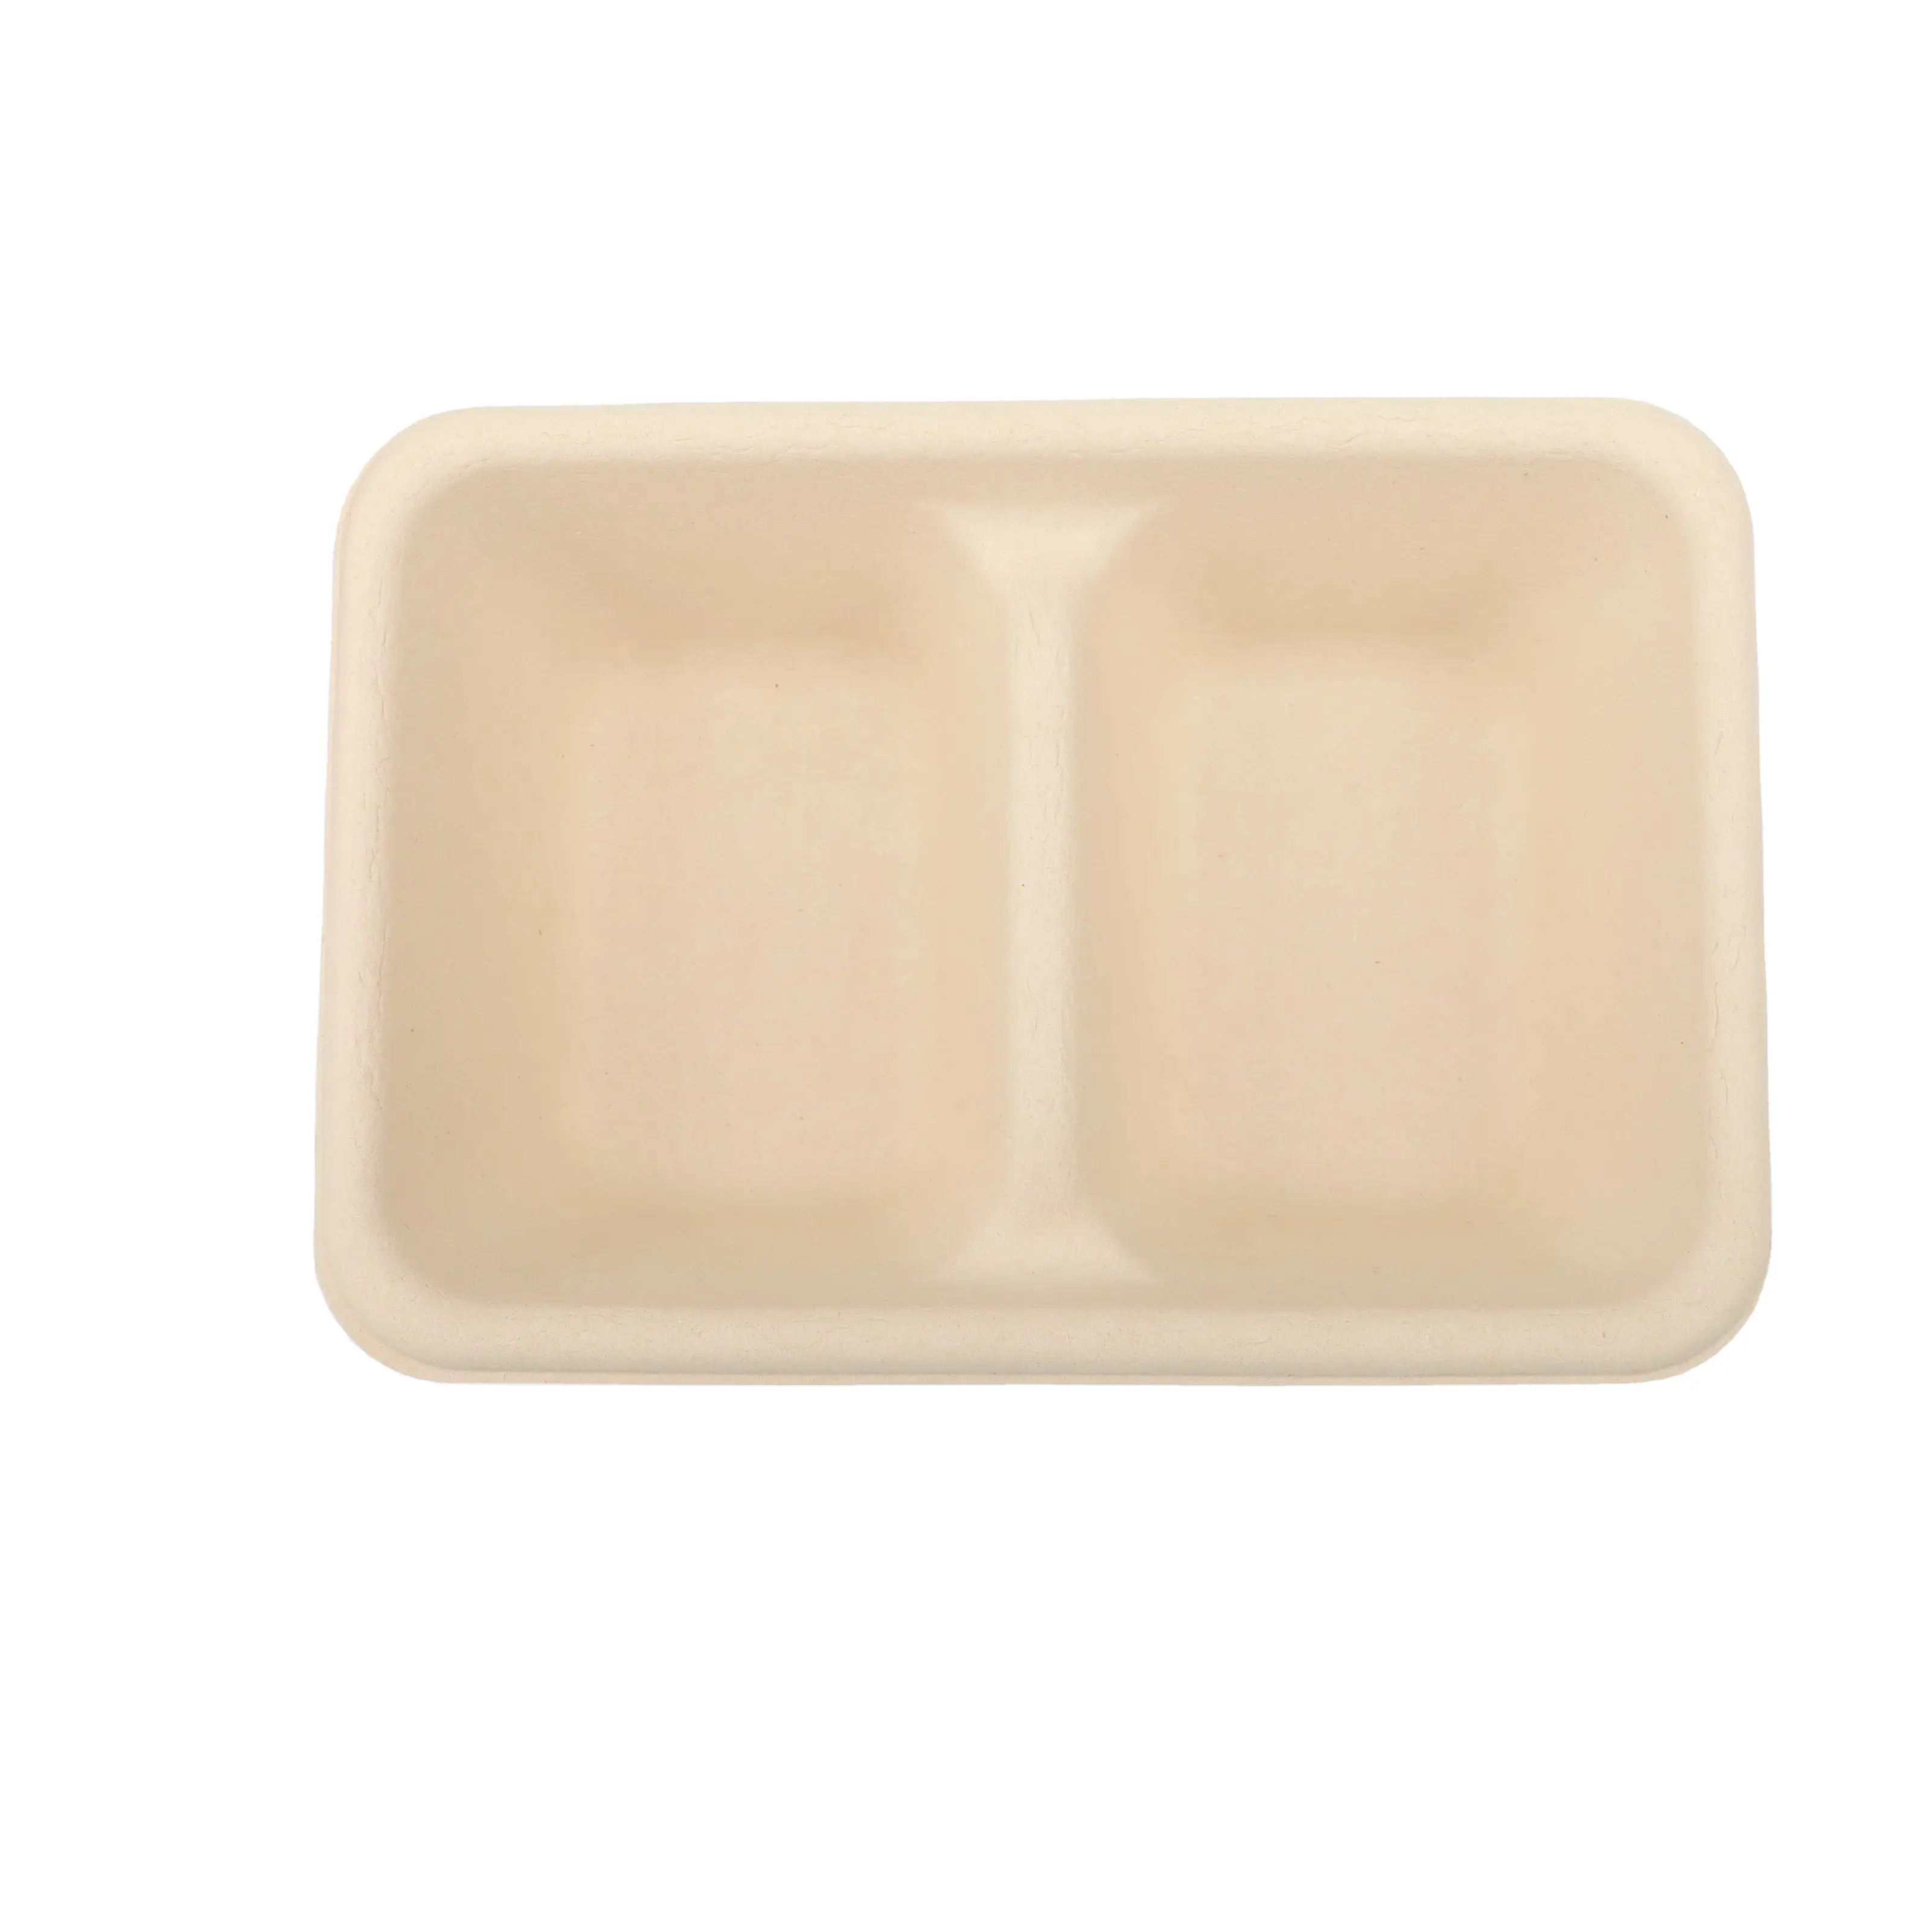 Fábrica China Contenedores de alimentos biodegradables desechables 650ML Caja de 2 compartimentos para comida rápida